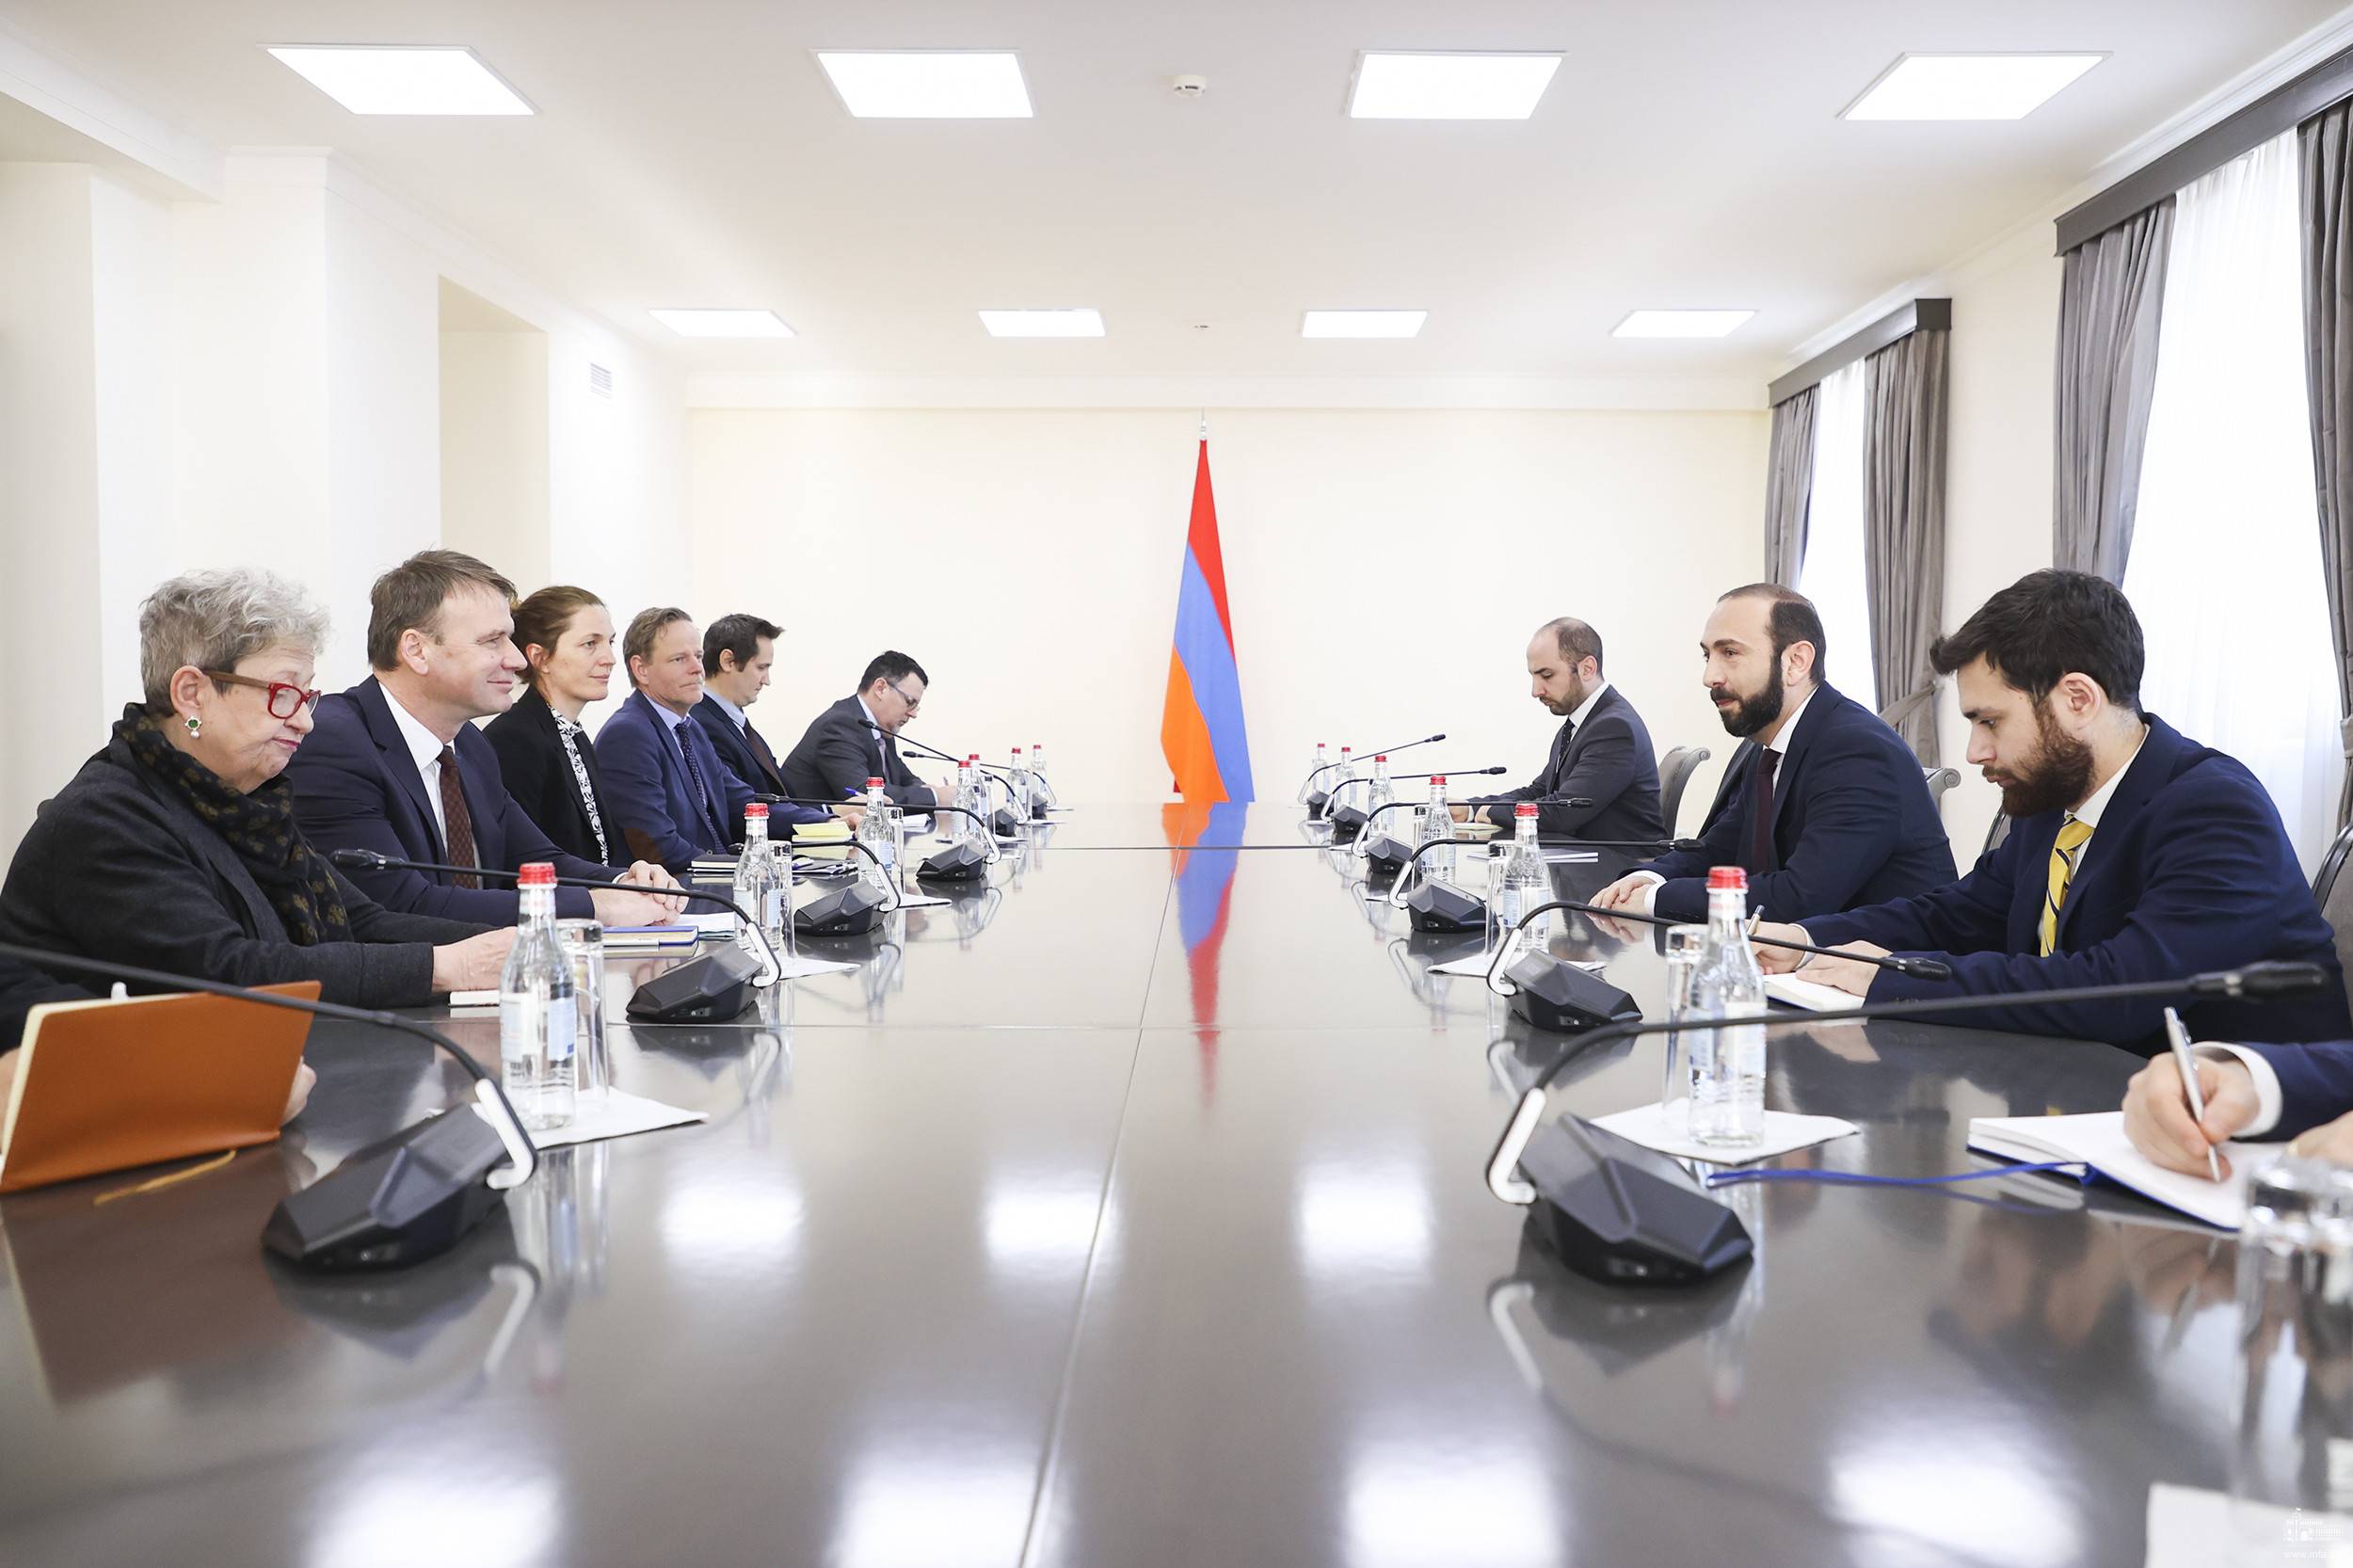 ԵՄ-ն դիտարկում է հայ-ադրբեջանական սահմանին նոր առաքելություն տեղակայելու հնարավորությունը